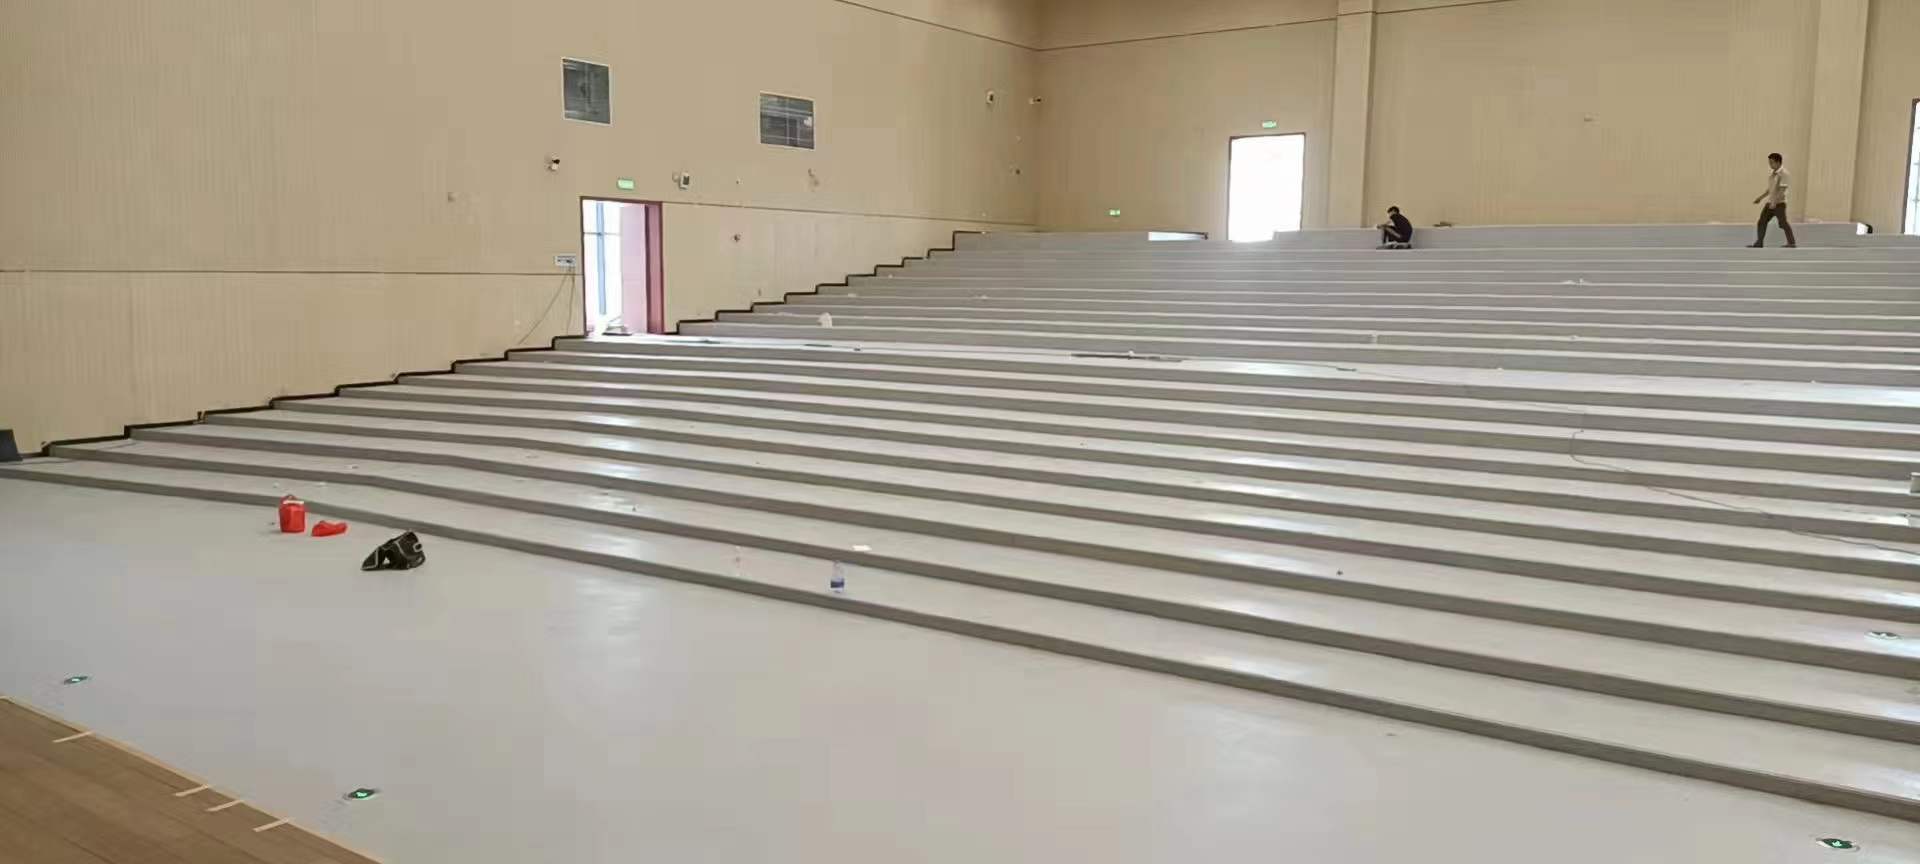 玉林职业技术学院礼堂石塑地板交工